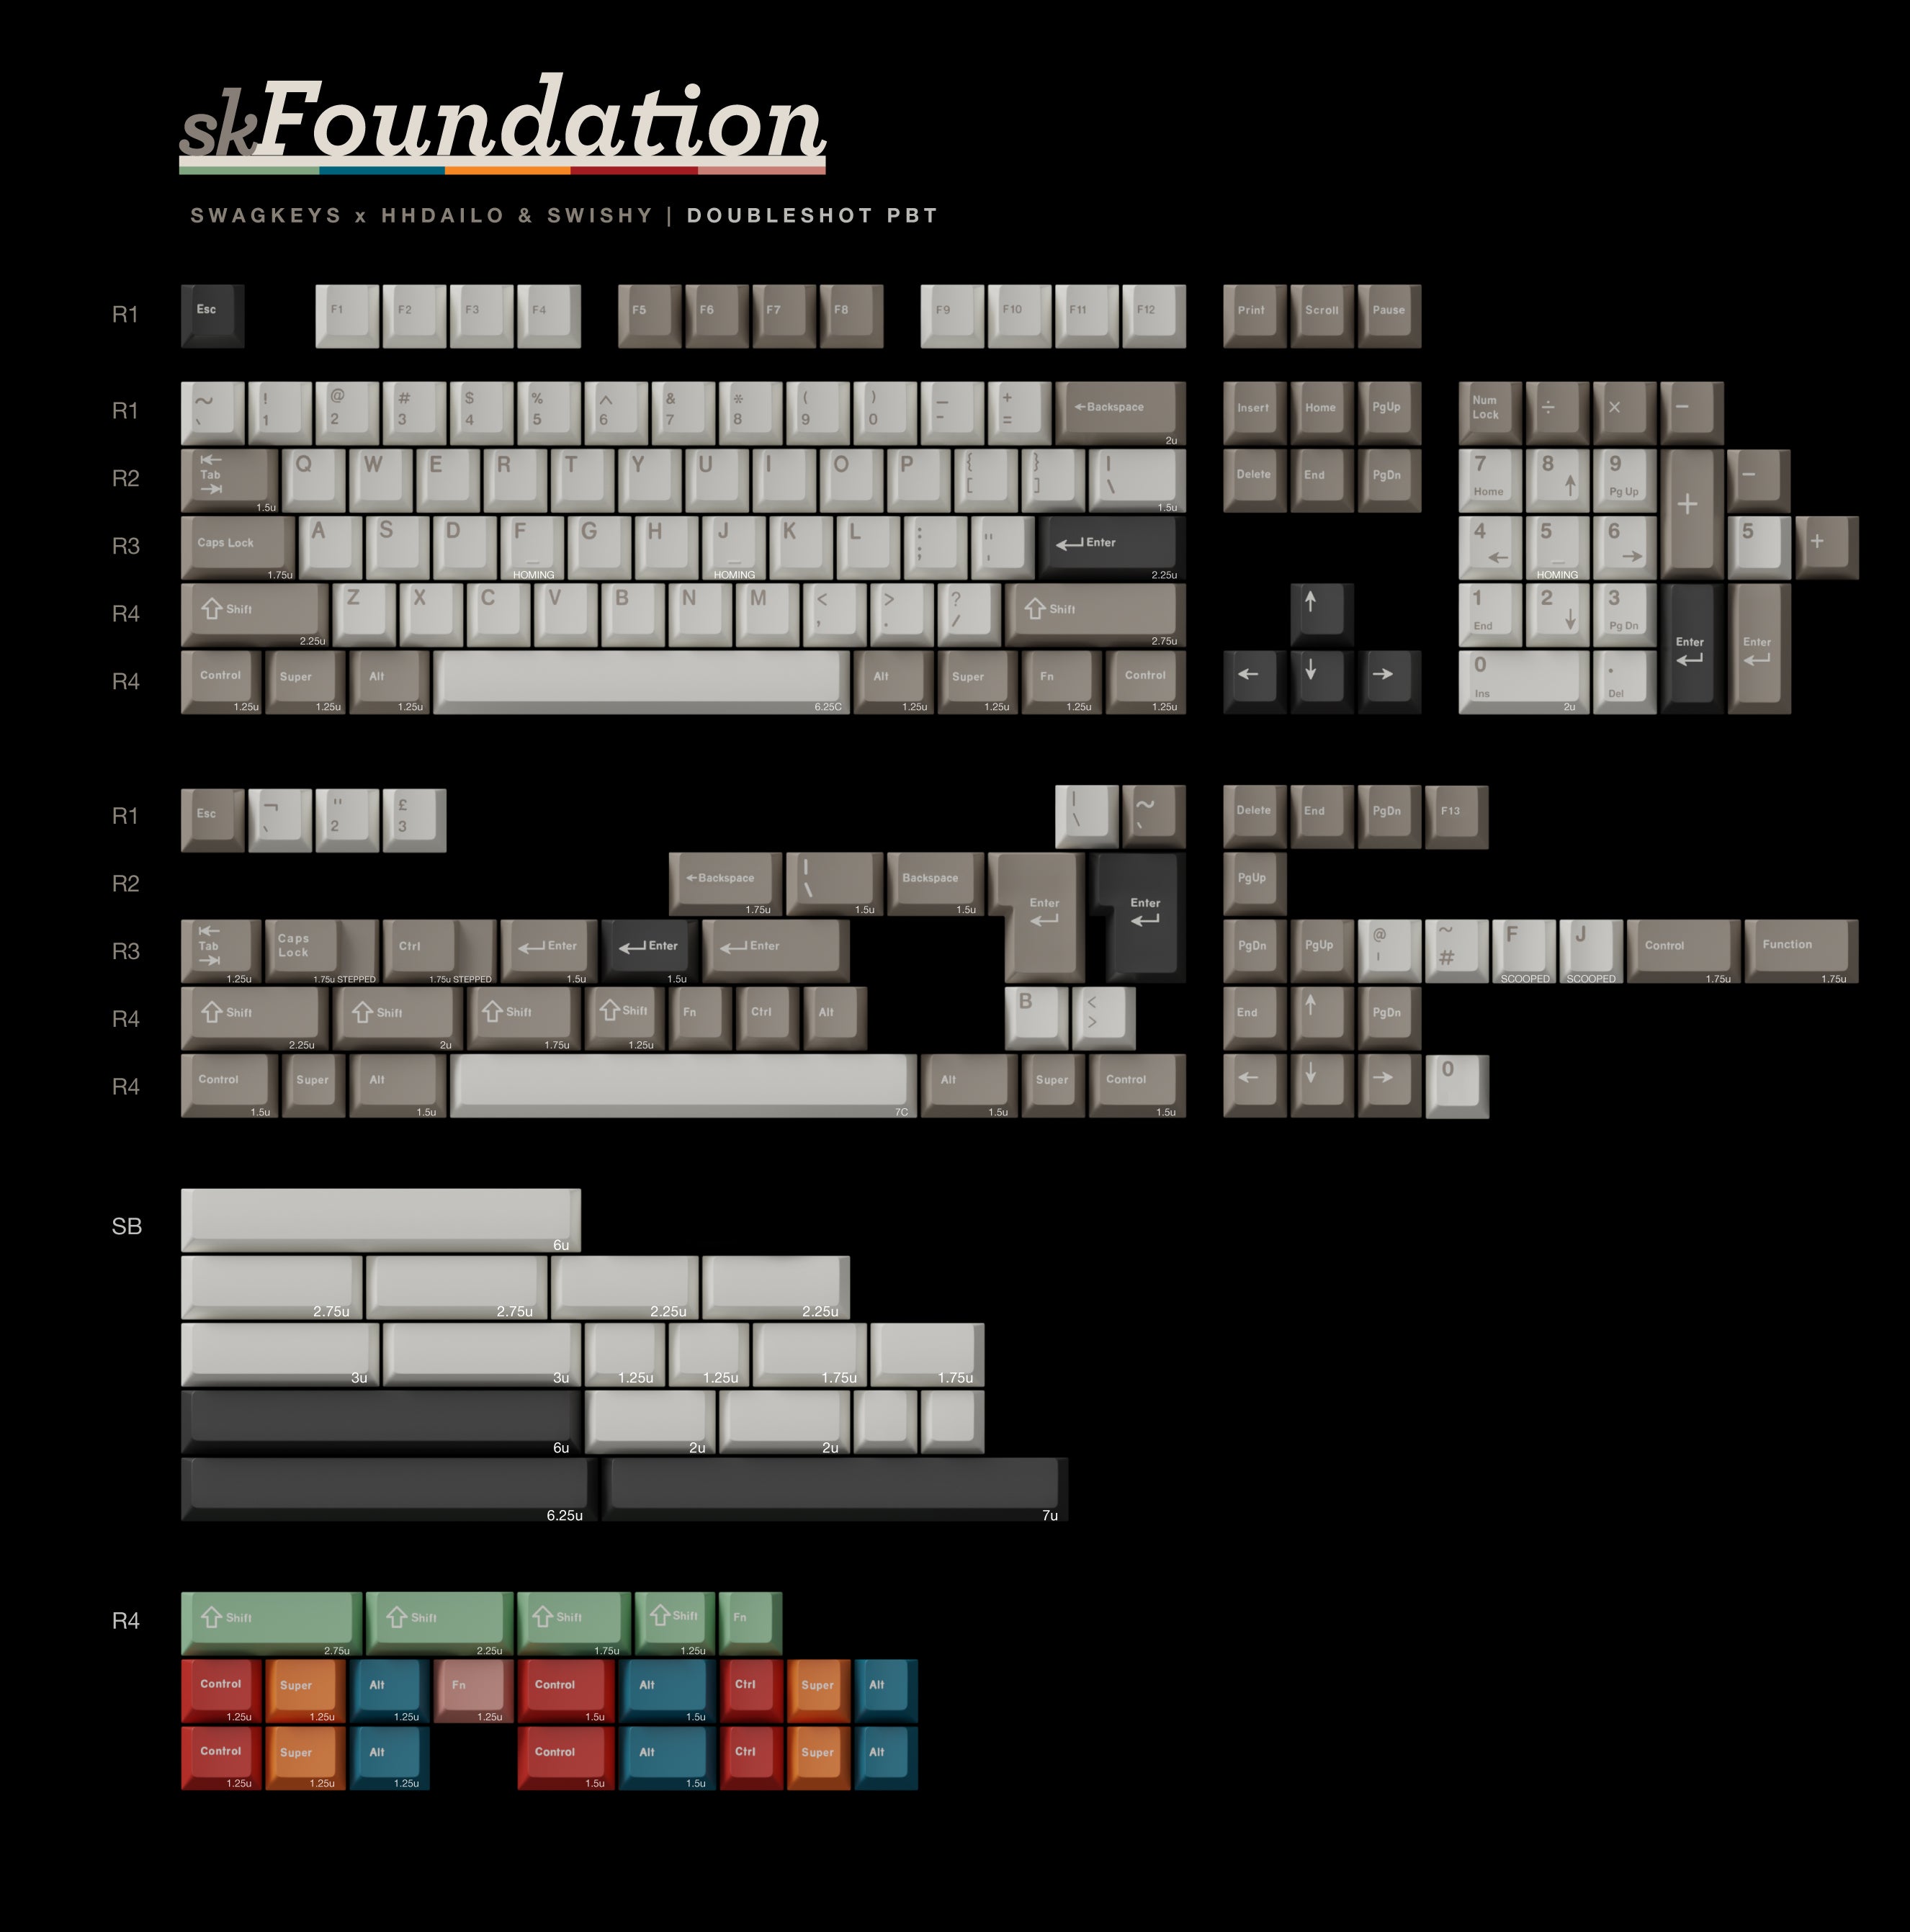 SW Foundation Keycaps